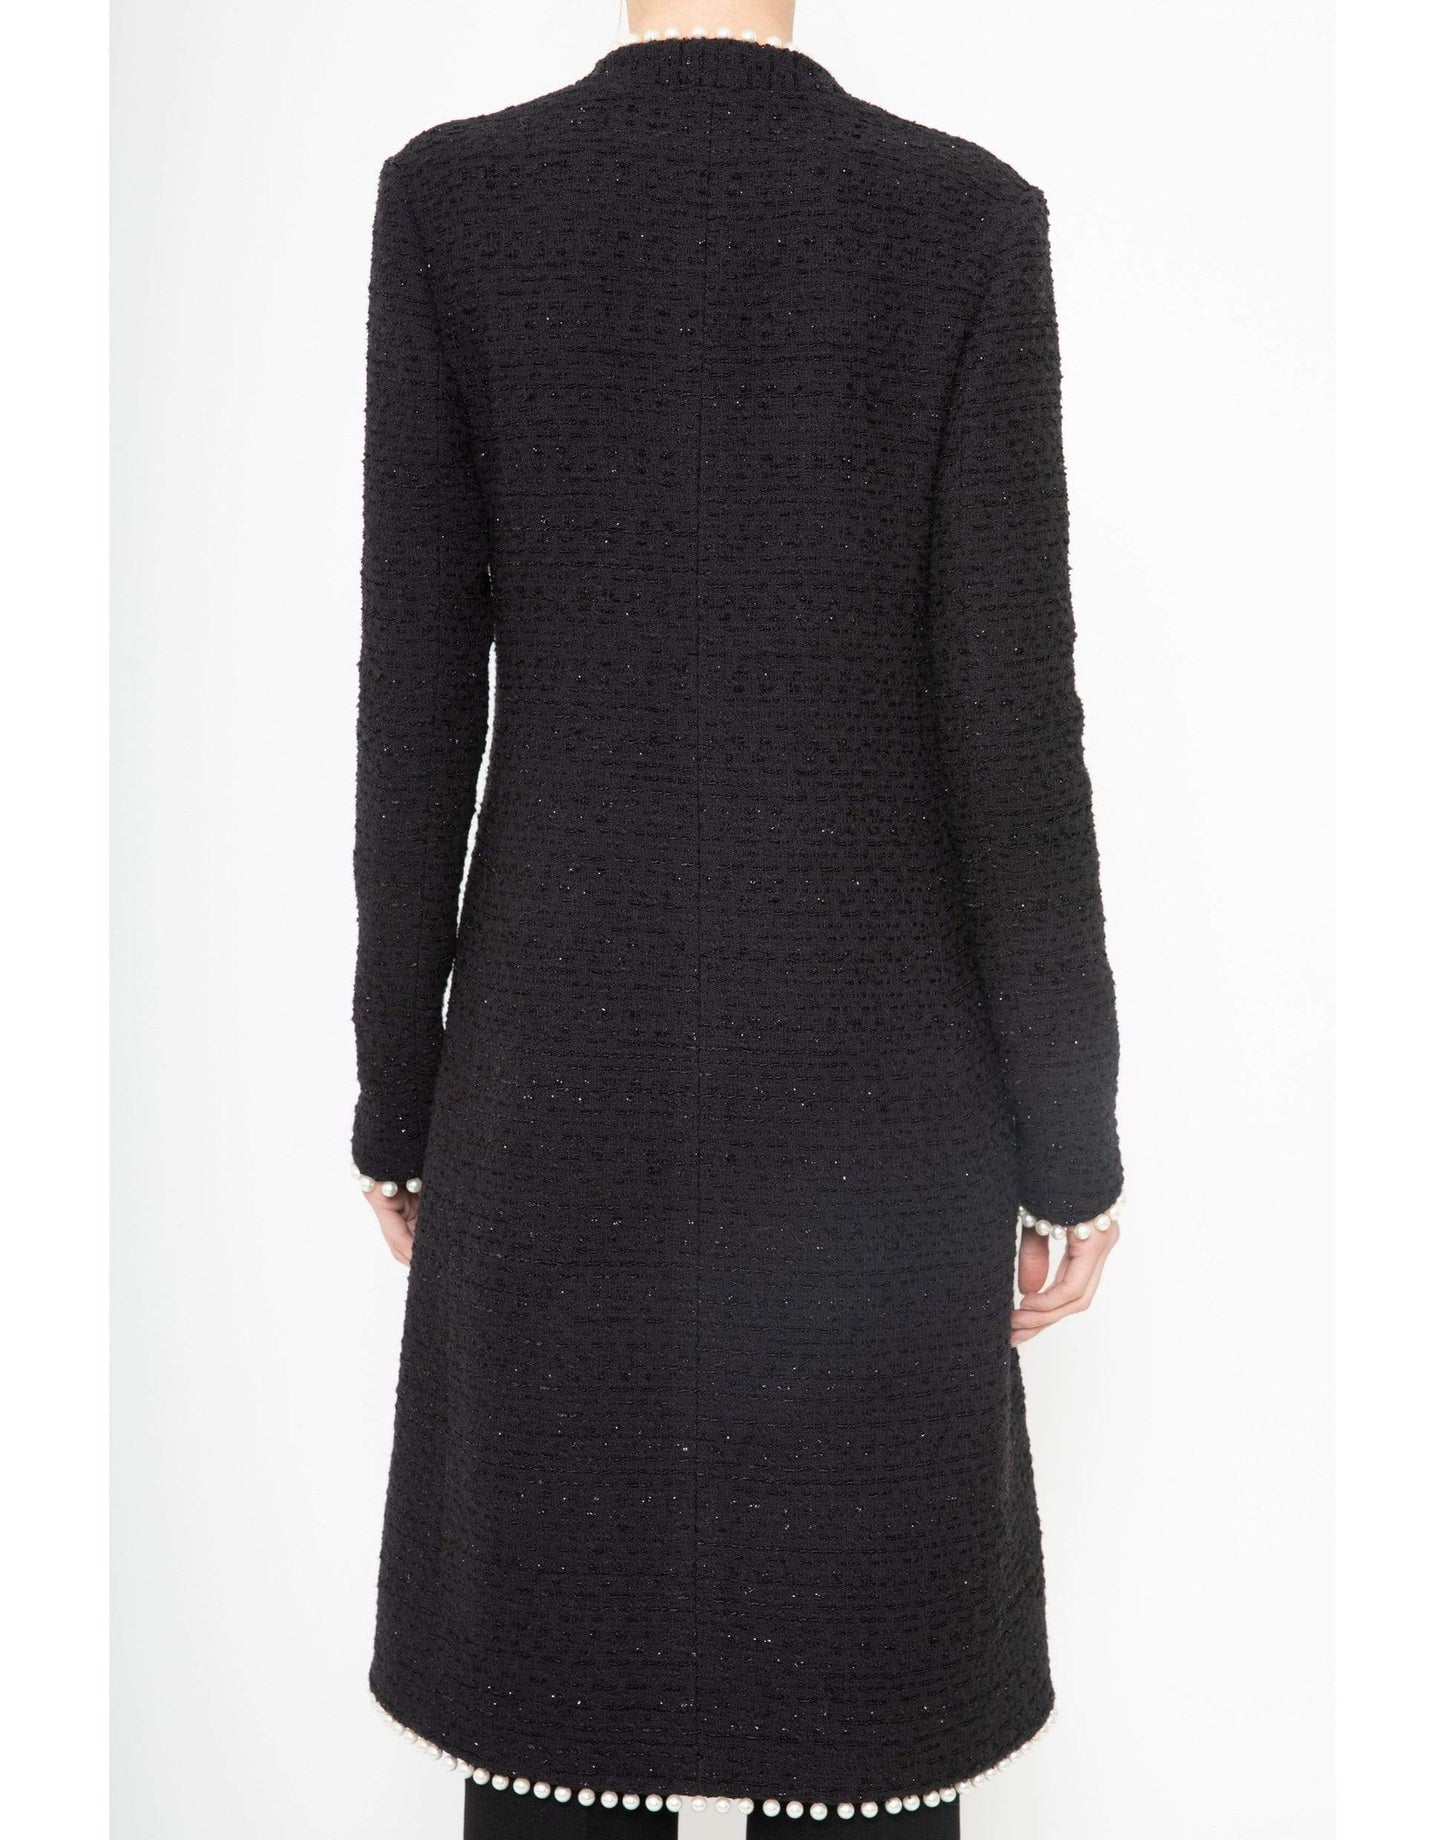 Black Long Sleeve Tweed Coat CLOTHINGCOATMISC GIAMBATTISTA VALLI   